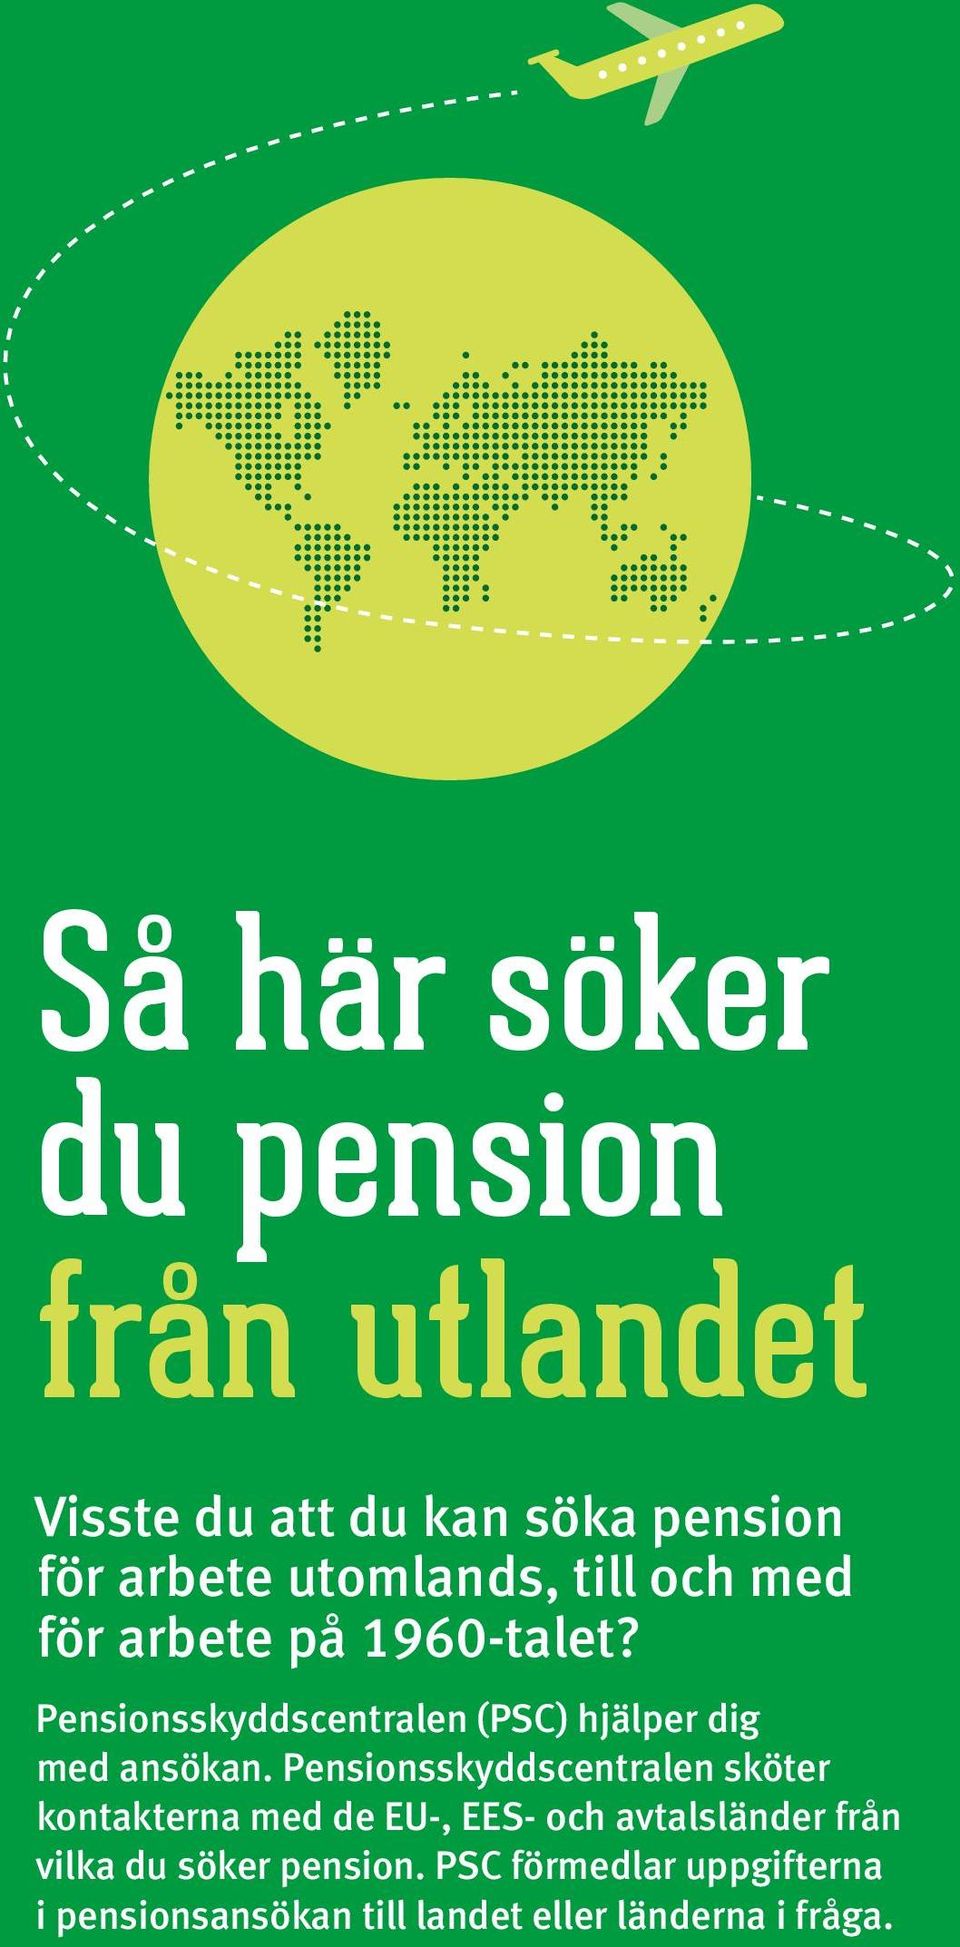 Pensionsskyddscentralen sköter kontakterna med de EU-, EES- och avtalsländer från vilka du